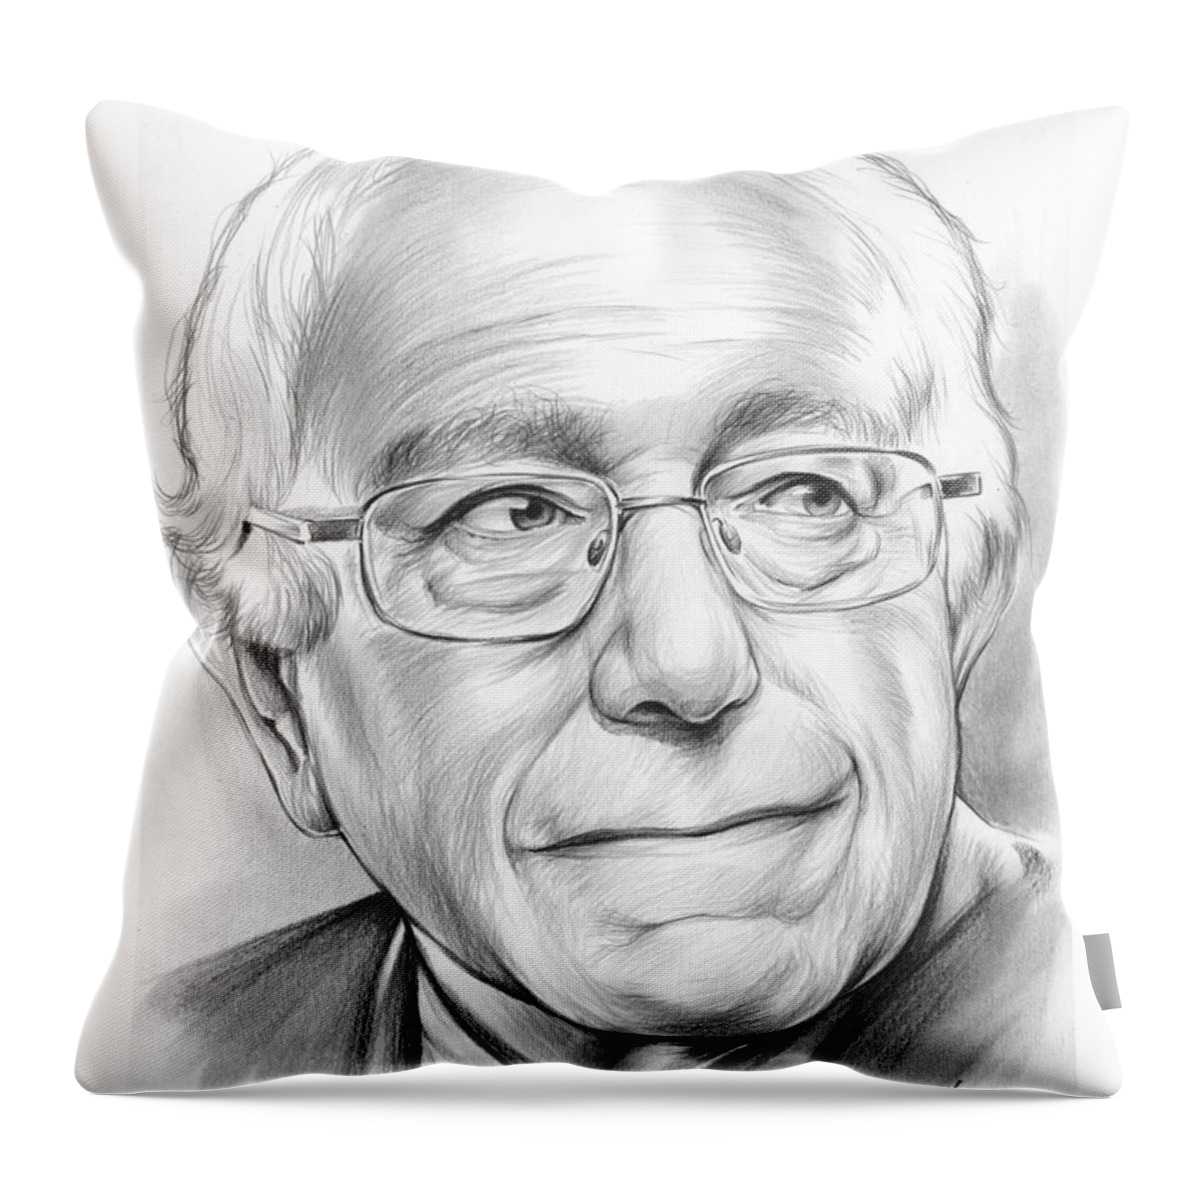 Bernie Sanders Throw Pillow featuring the drawing Bernie Sanders by Greg Joens